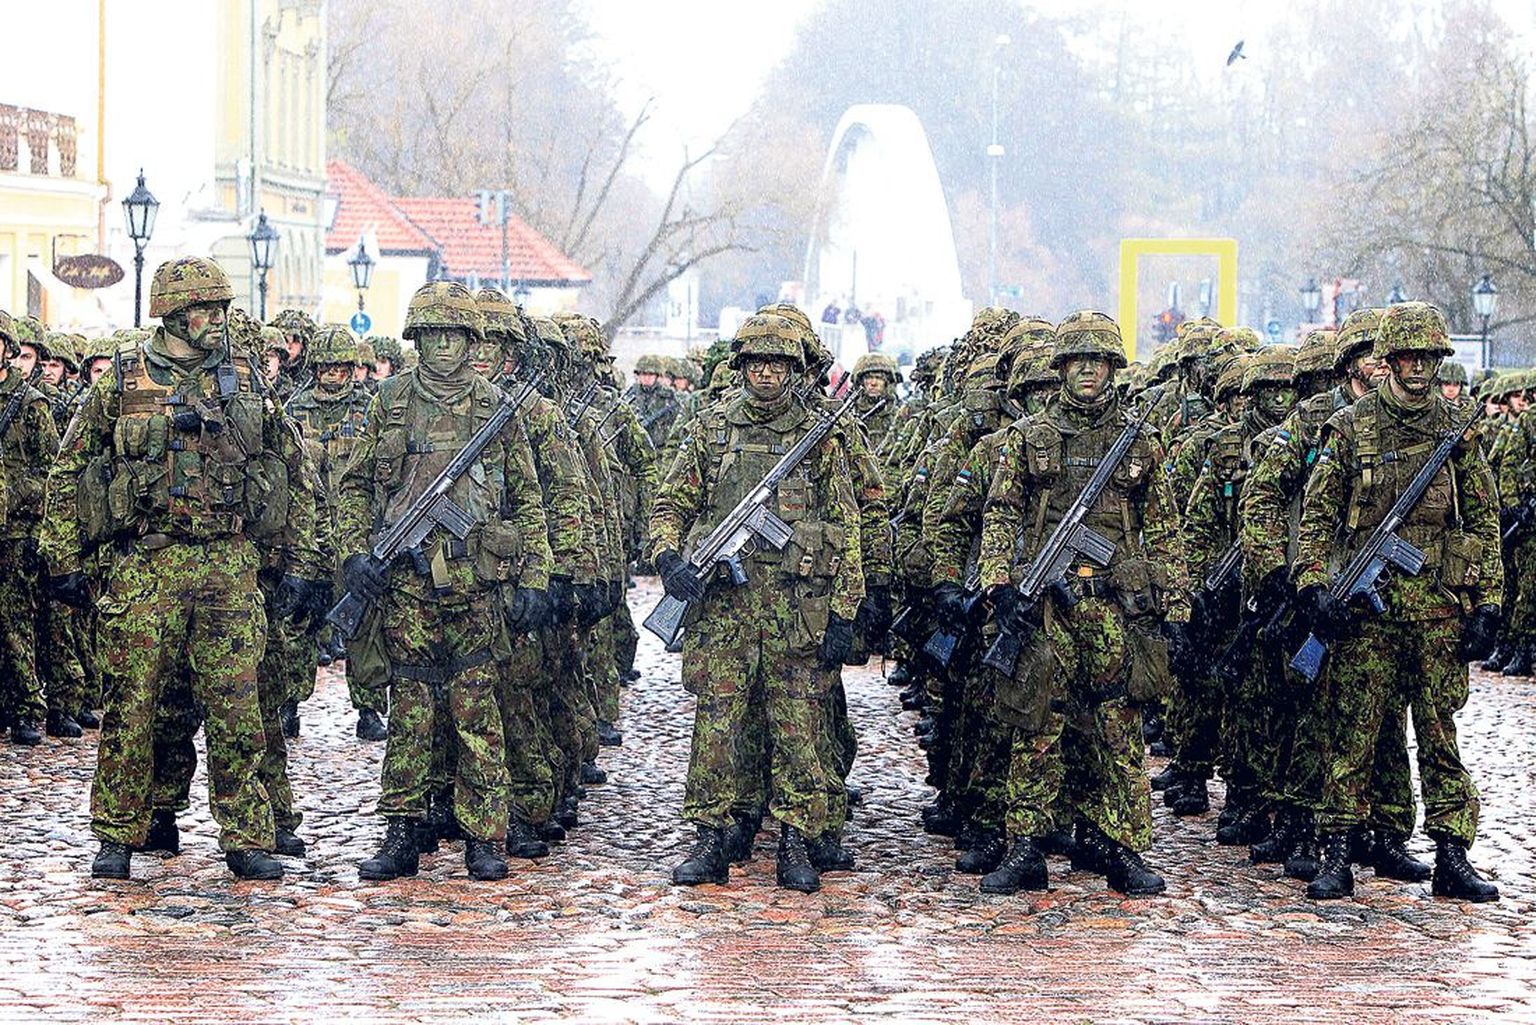 Enne tseremoonia algust kostitas ilmataat raeplatsile rivistatud sõdureid paduvihmaga.